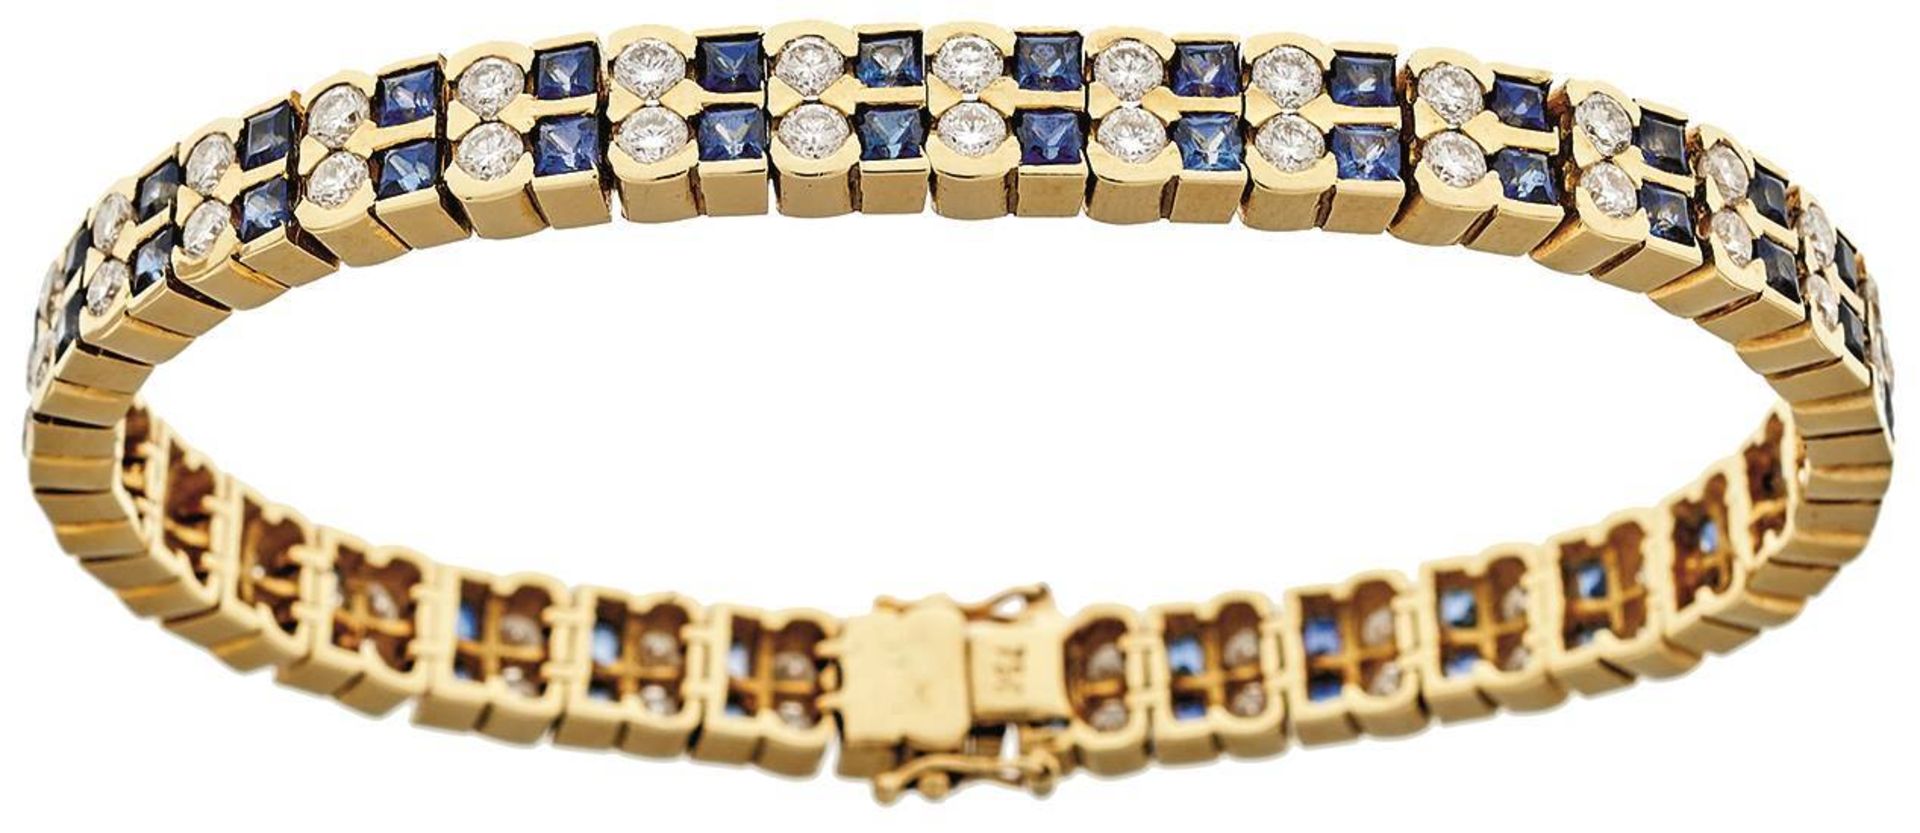 Saphir-Brillant-Armband, 750 Gelbgold, Punze, 66 Brillanten von zus. ca. 3,2ct, 64 Saphiren von zus.